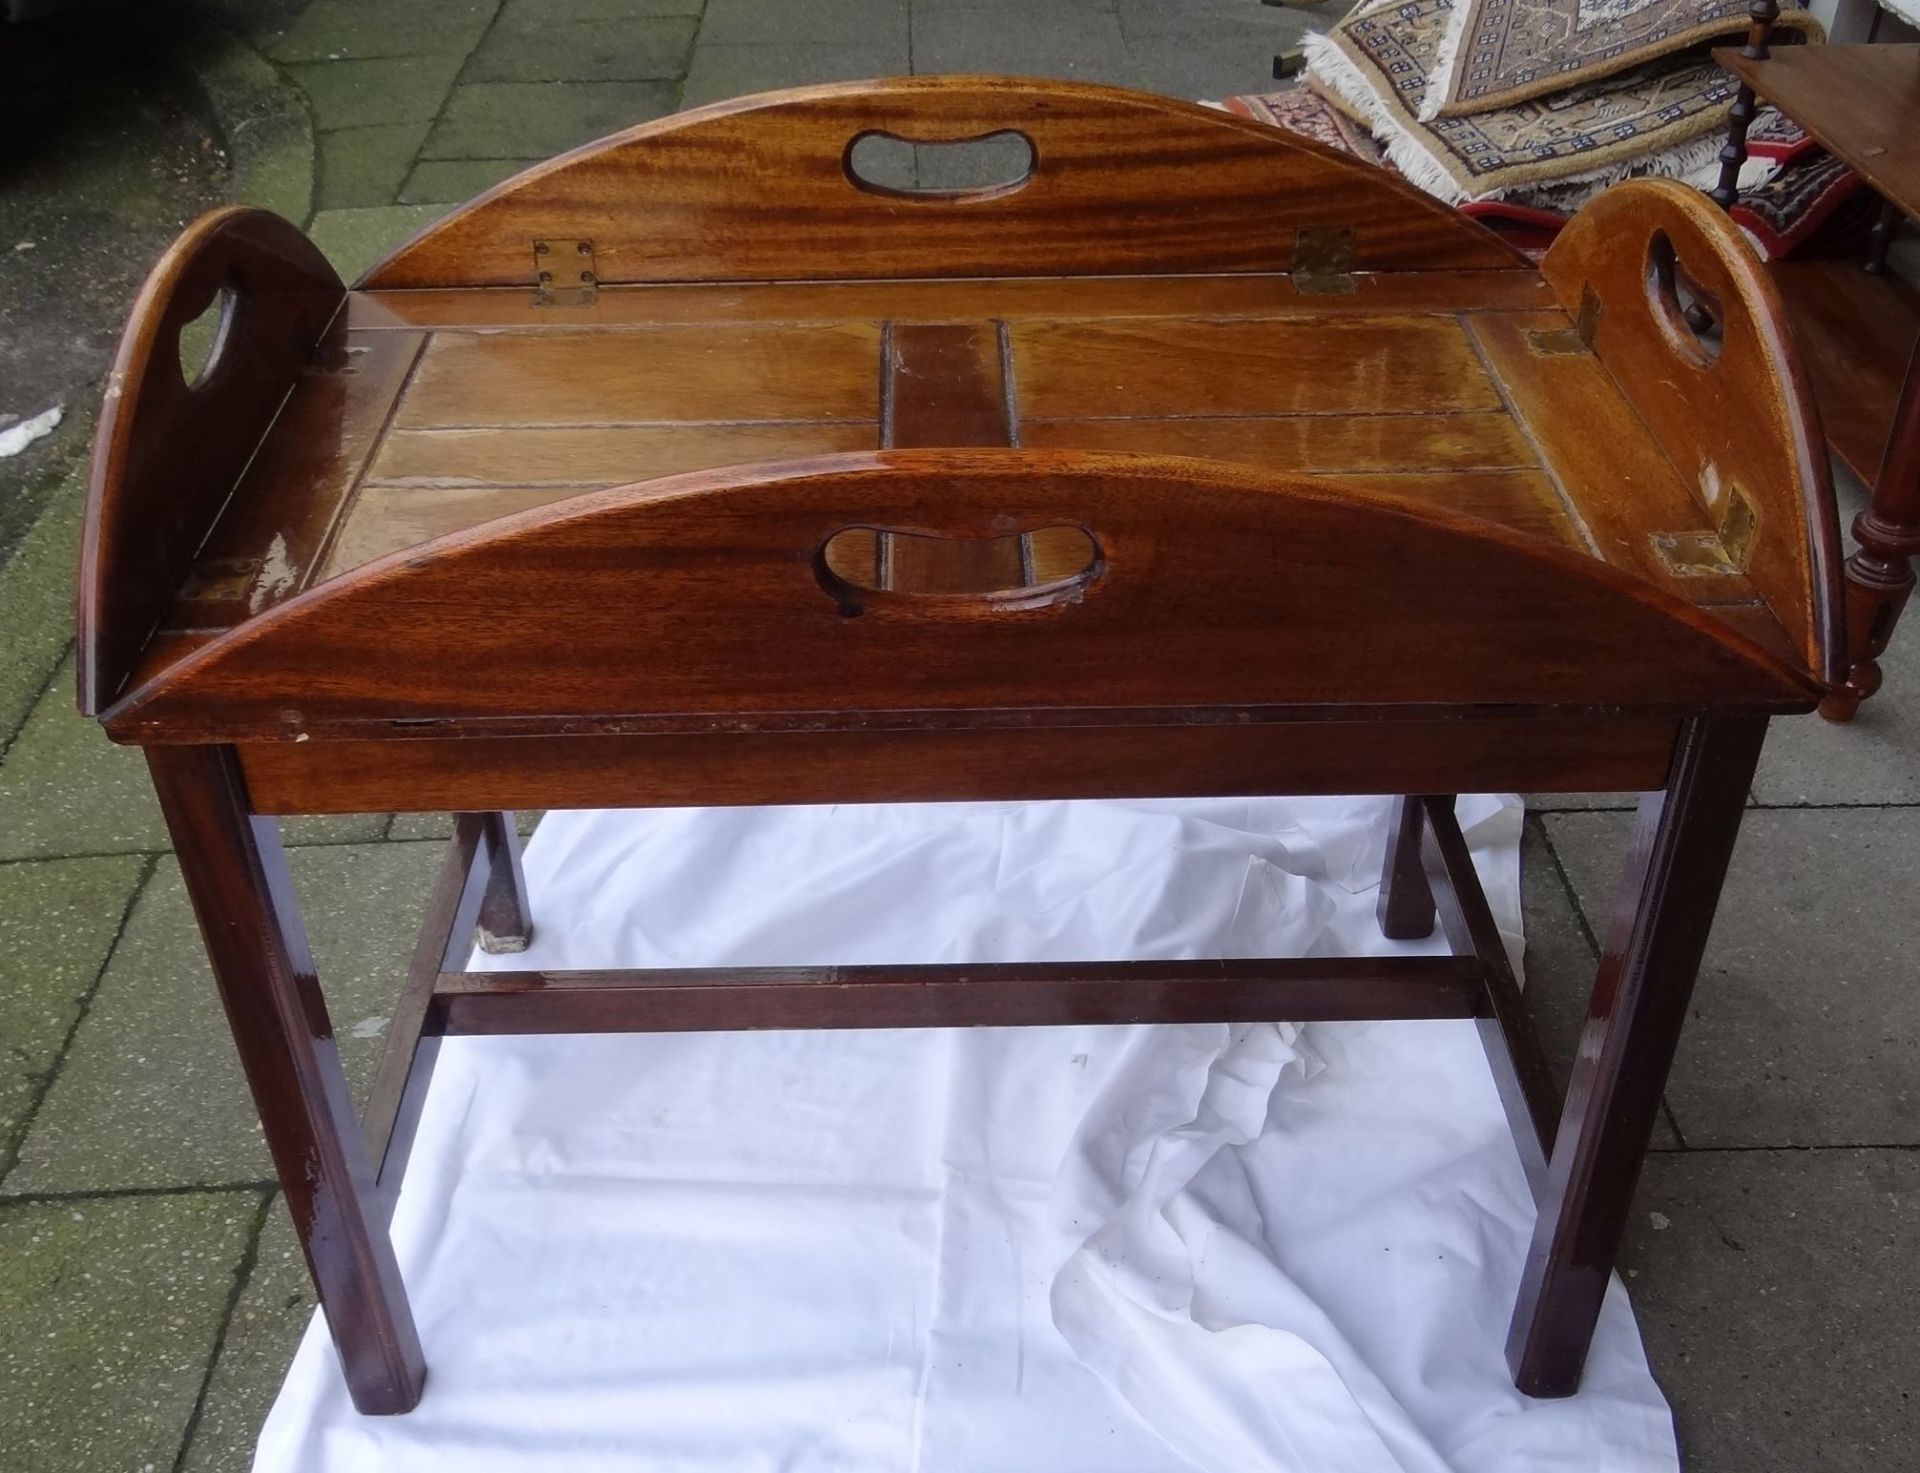 Tischchen im Maritim-Look, klappbare Seiten, H-59 cm, 91x66 cm